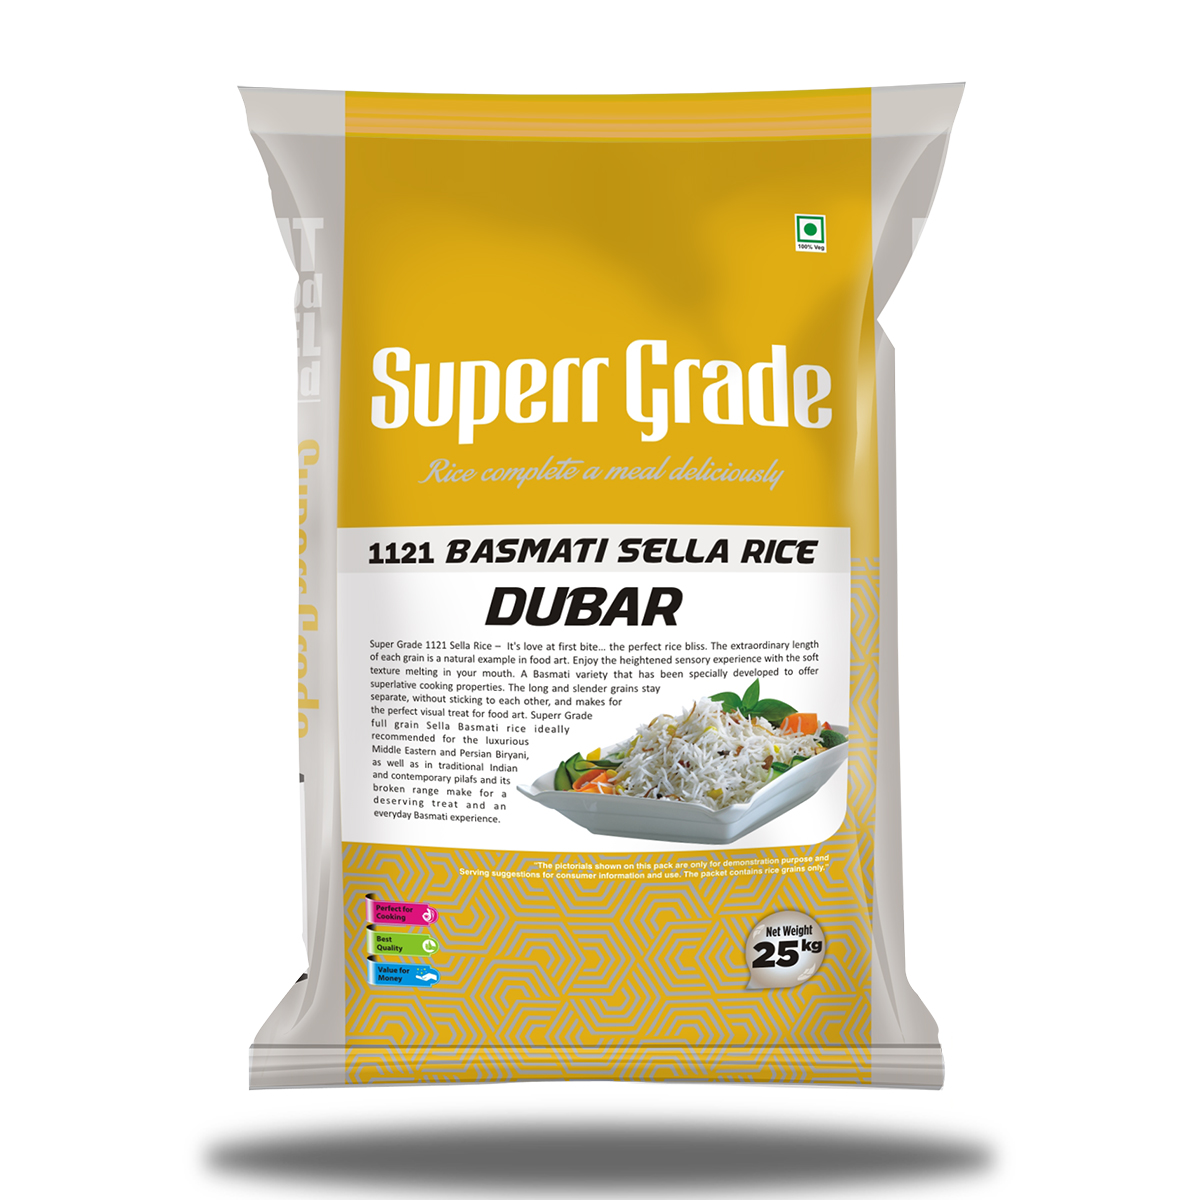 Super Grade Dubar